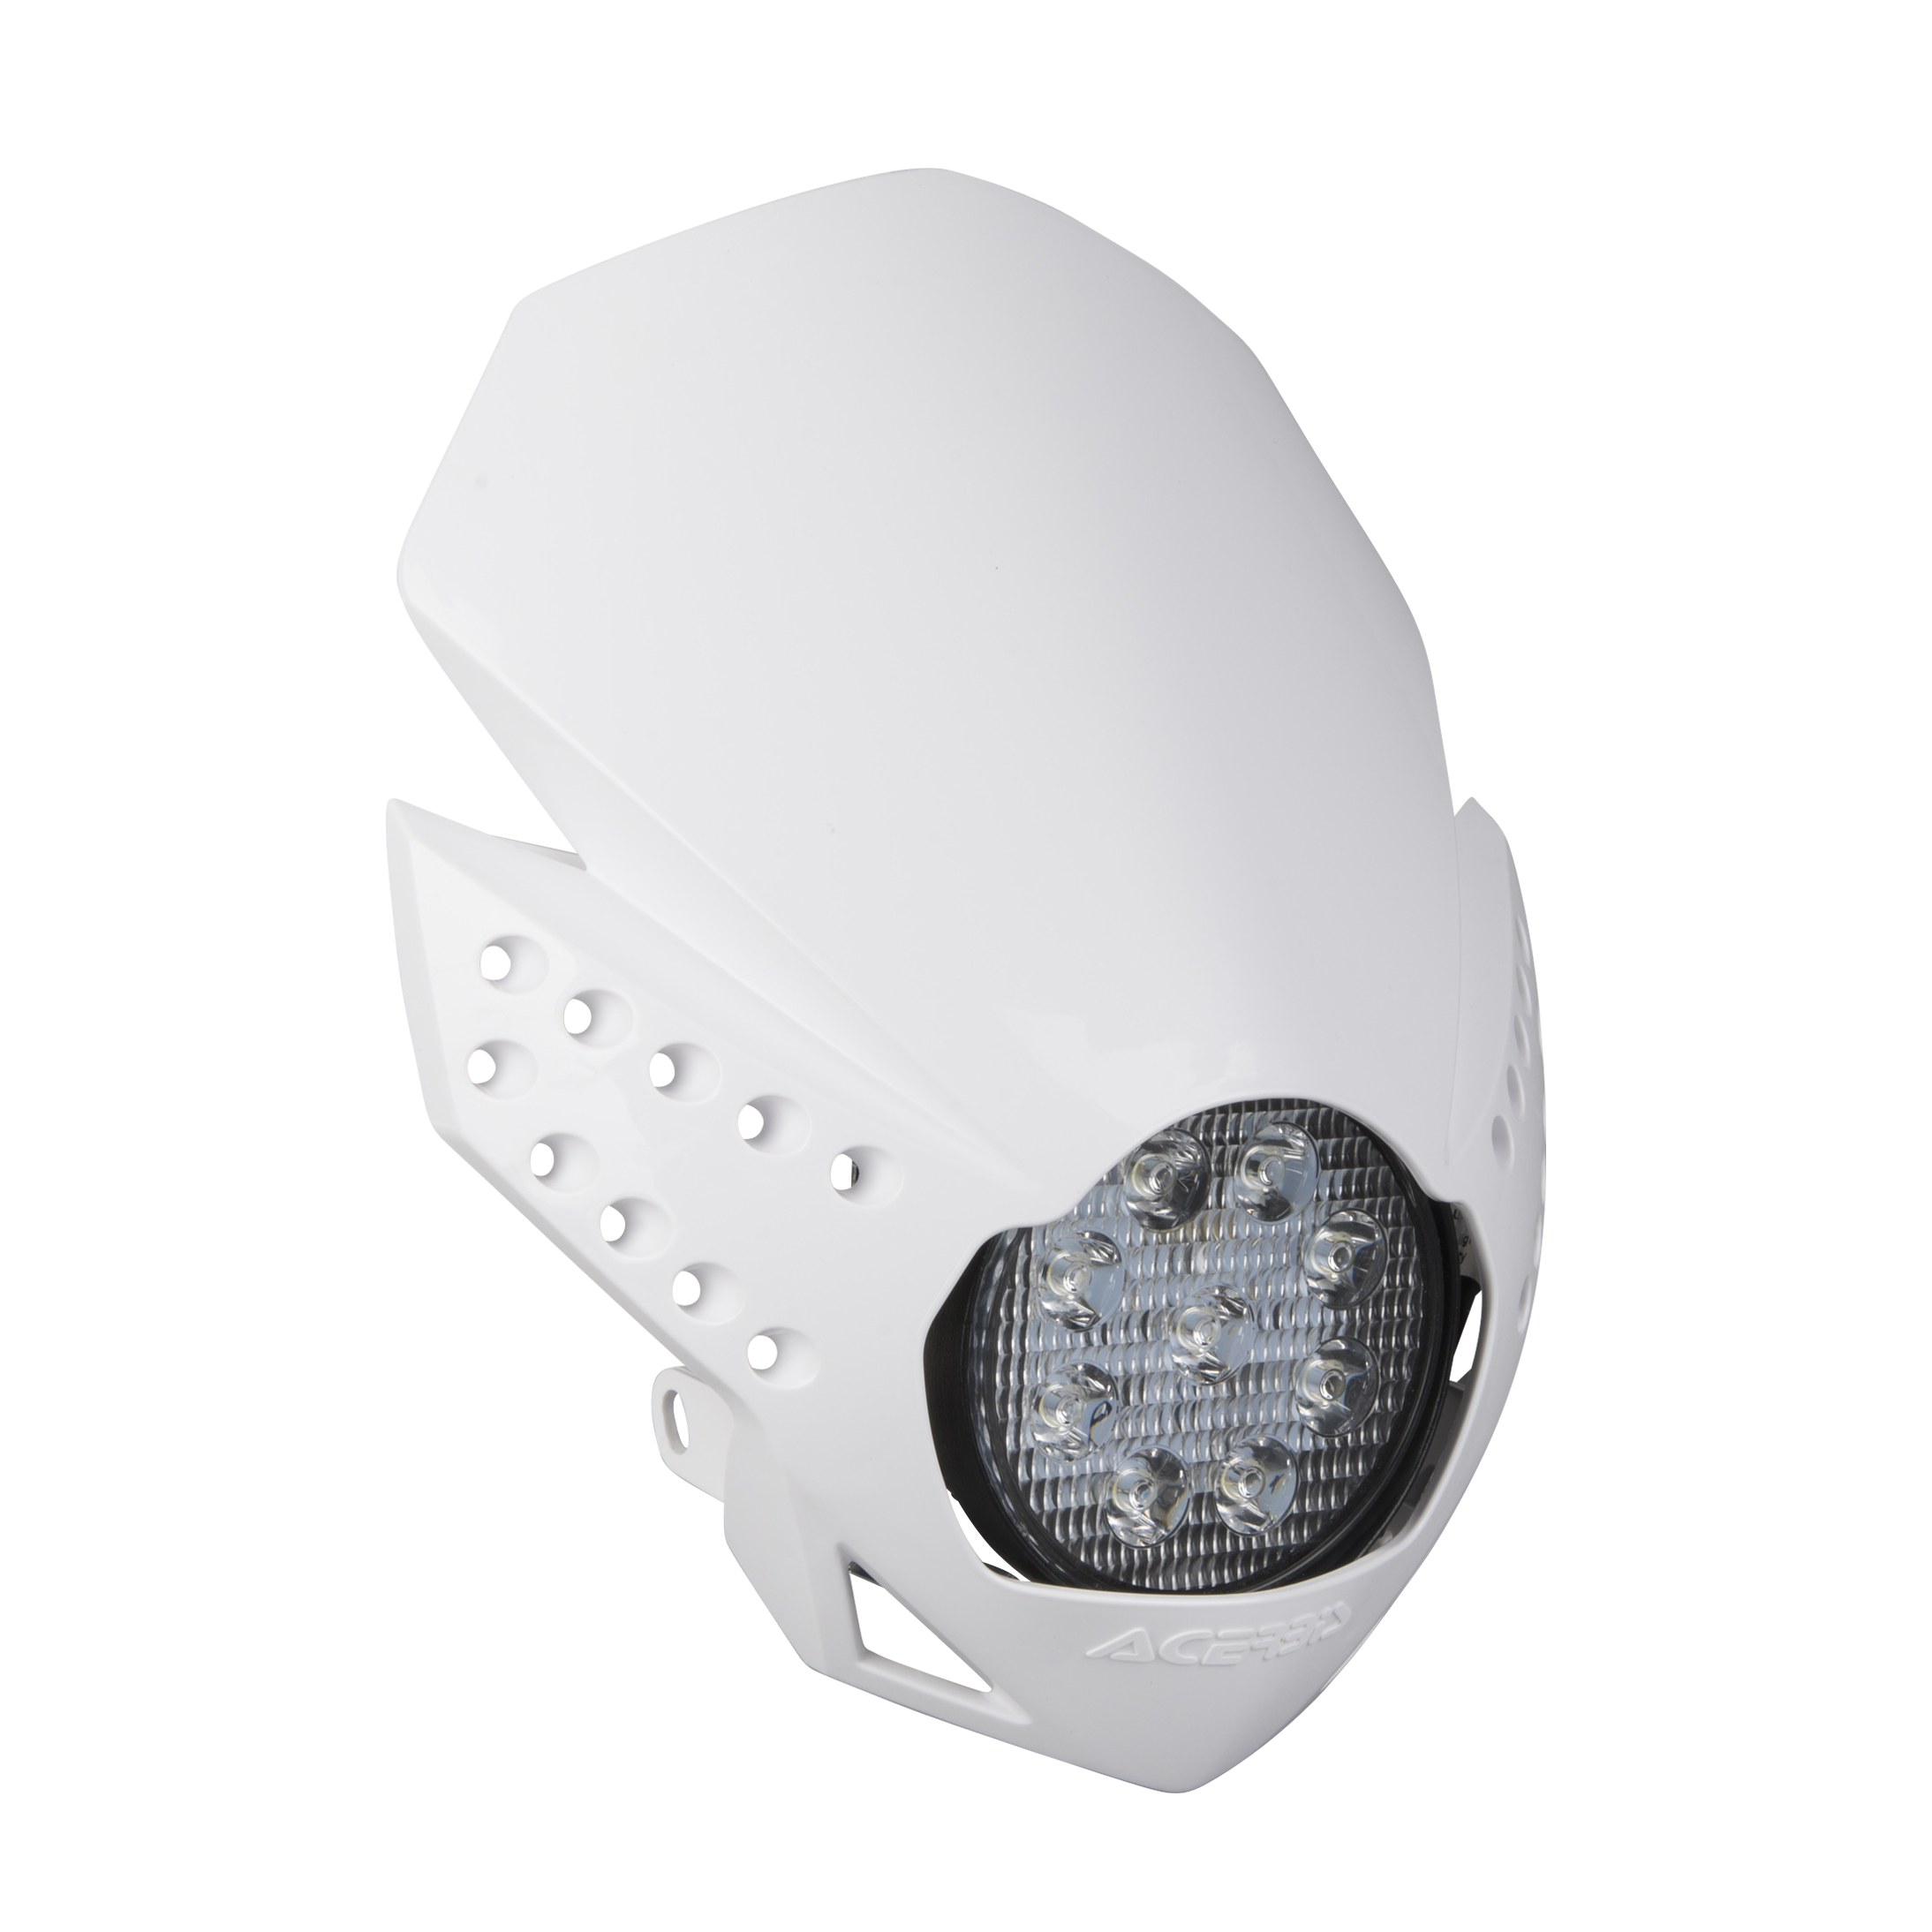 Headlight Rtech V-Face Full LED Black - Buy now, get 11% off